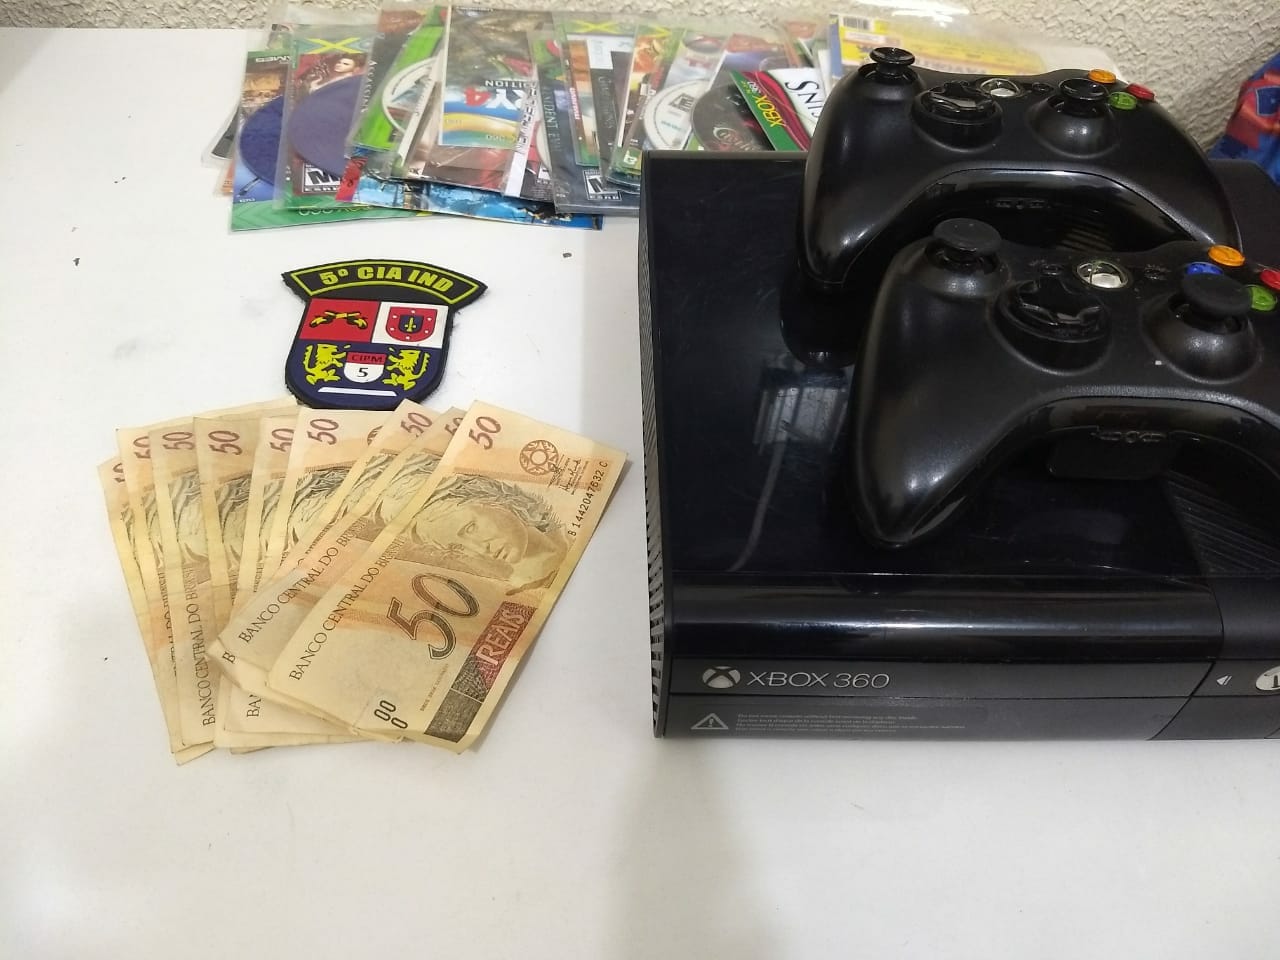 Homens pagaram video game com notas de R$ 50 falsificadas em Cianorte e acabam presos